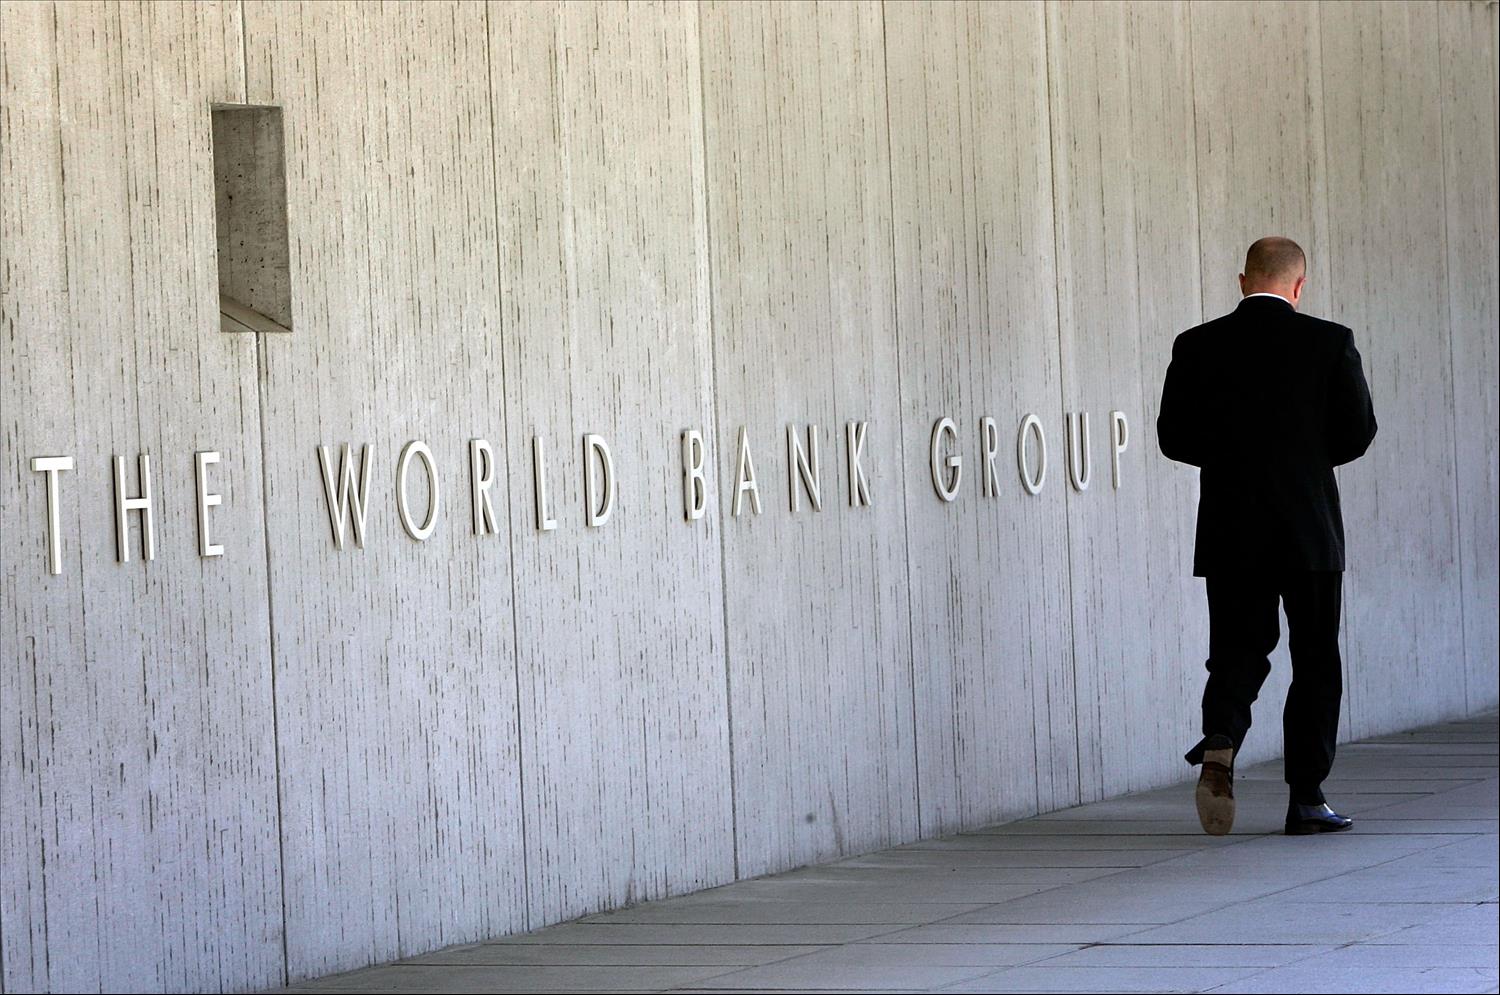 البنك الدولي: 2.6 تريليون دولار حجم الفساد حول العالم سنوياً